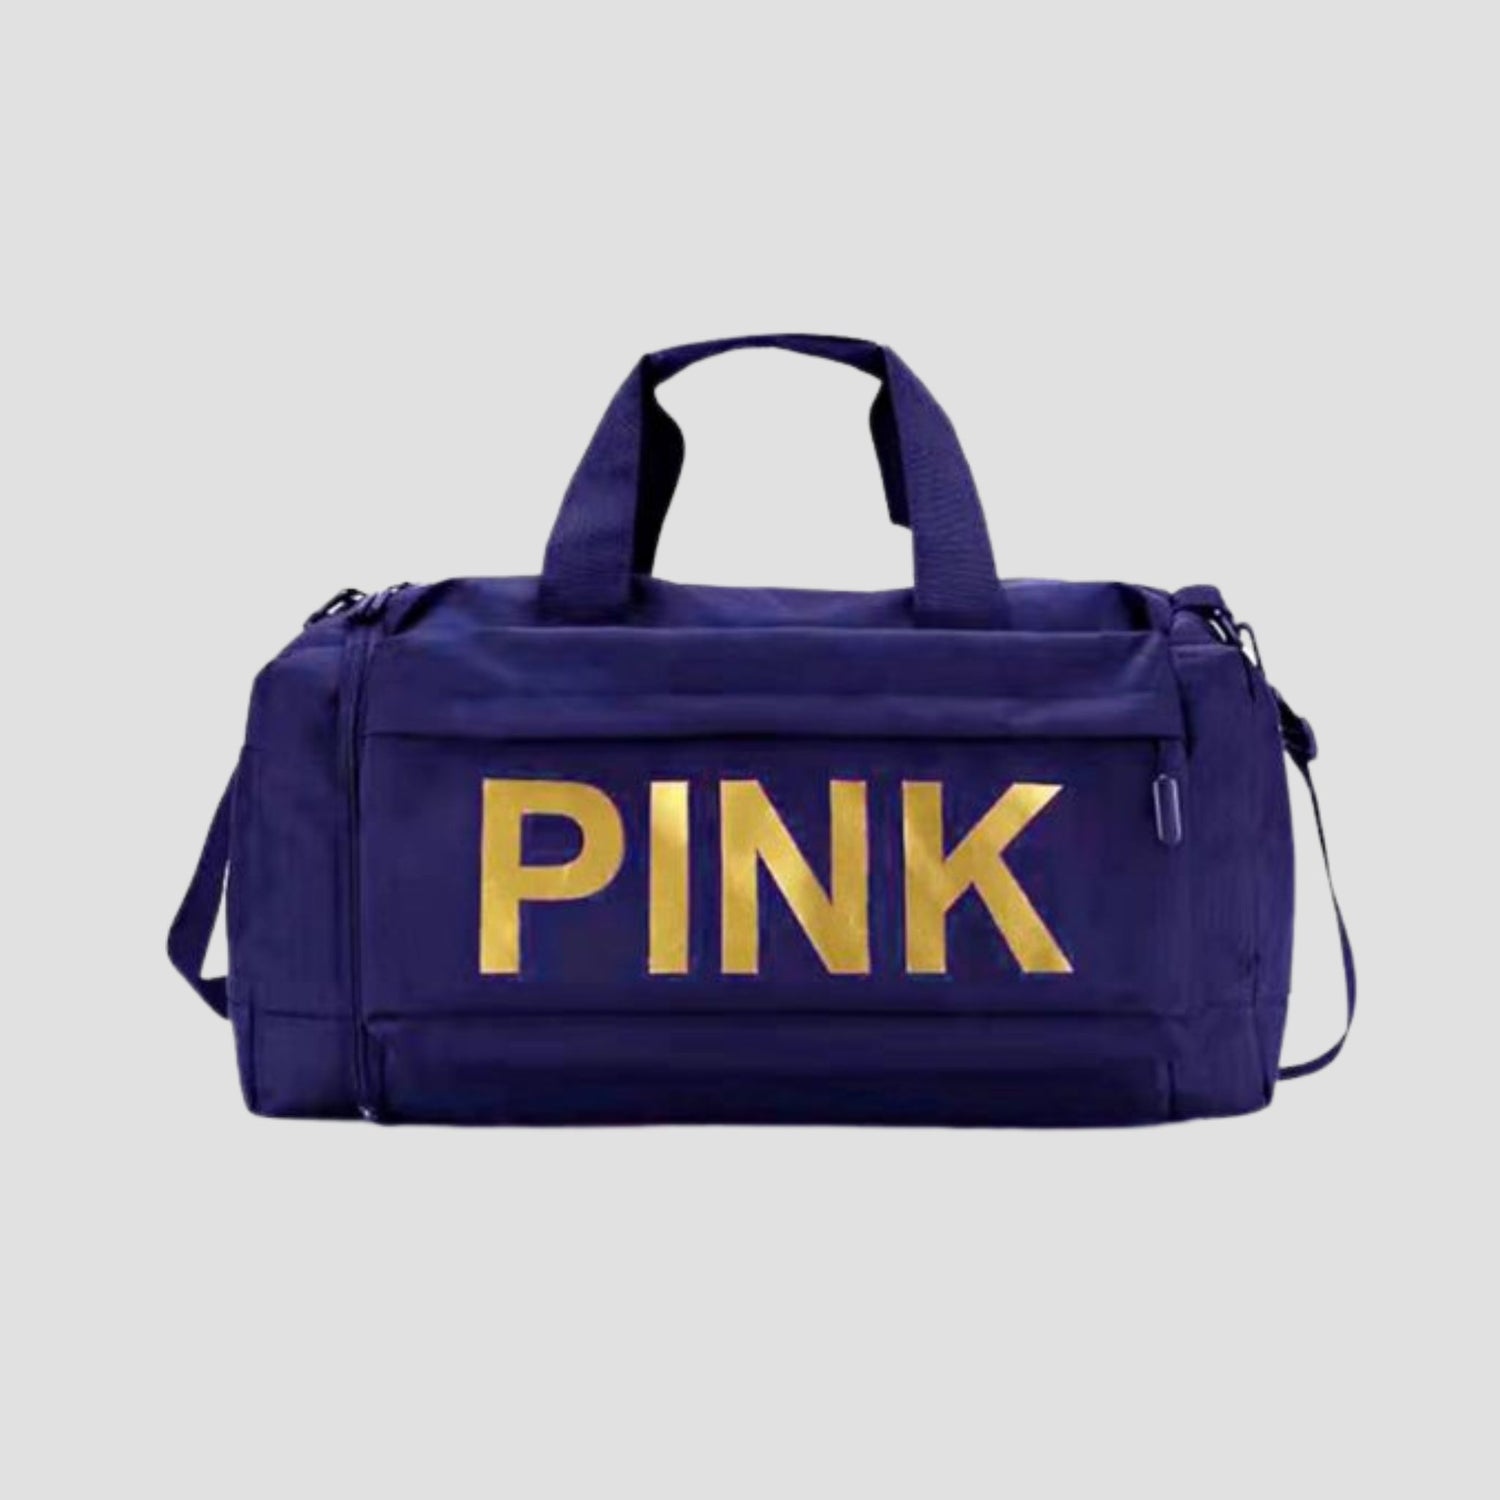 Navy Blue A081 PINK Duffel Bag